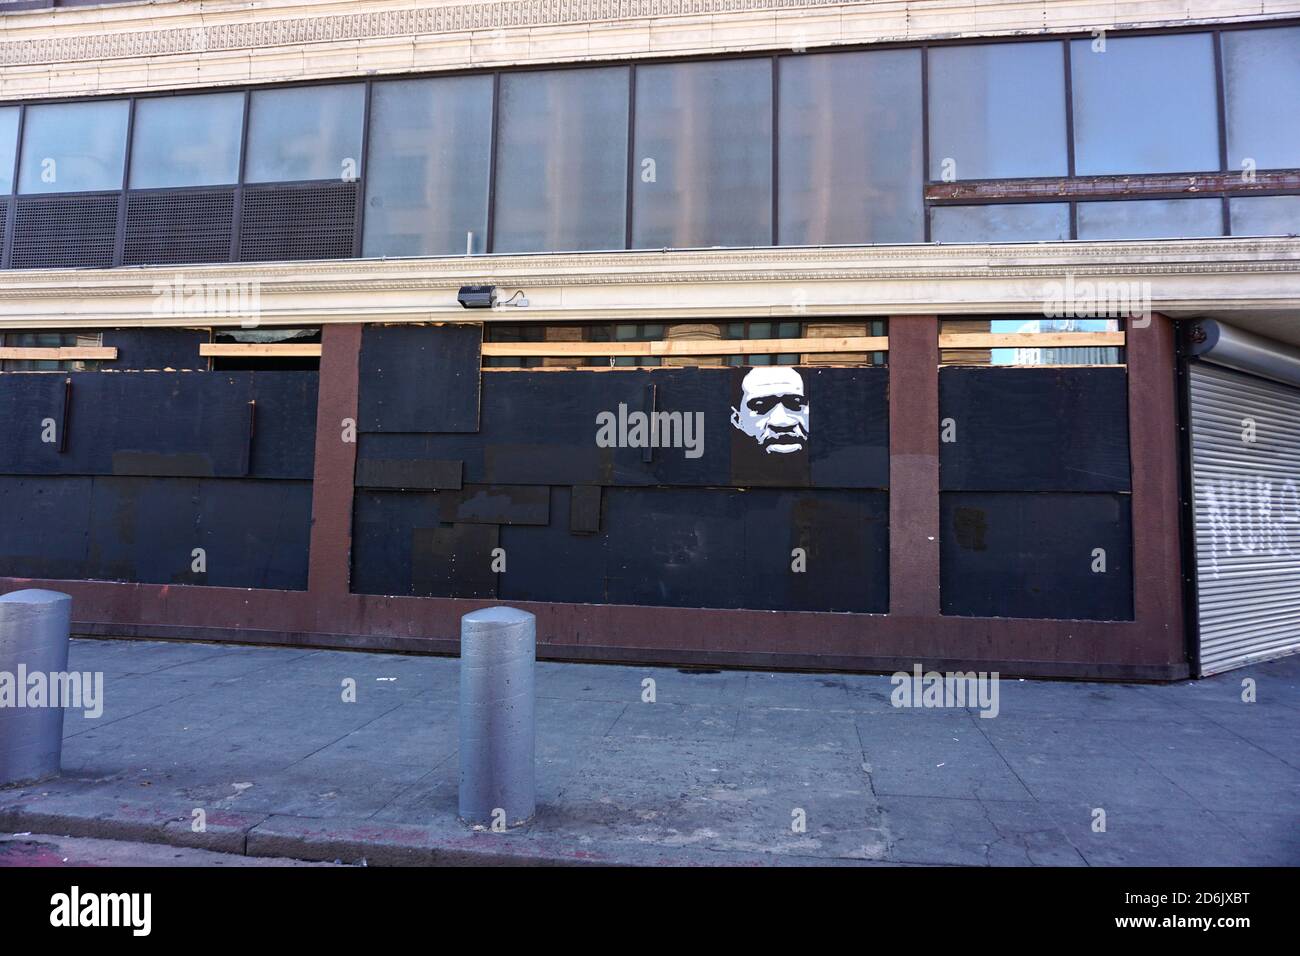 17 octobre 2020. Peinture du visage de George Floyd, Black Lives Matter art de rue, sur des fenêtres à bord. Market Street, San Francisco, Californie, États-Unis. Banque D'Images